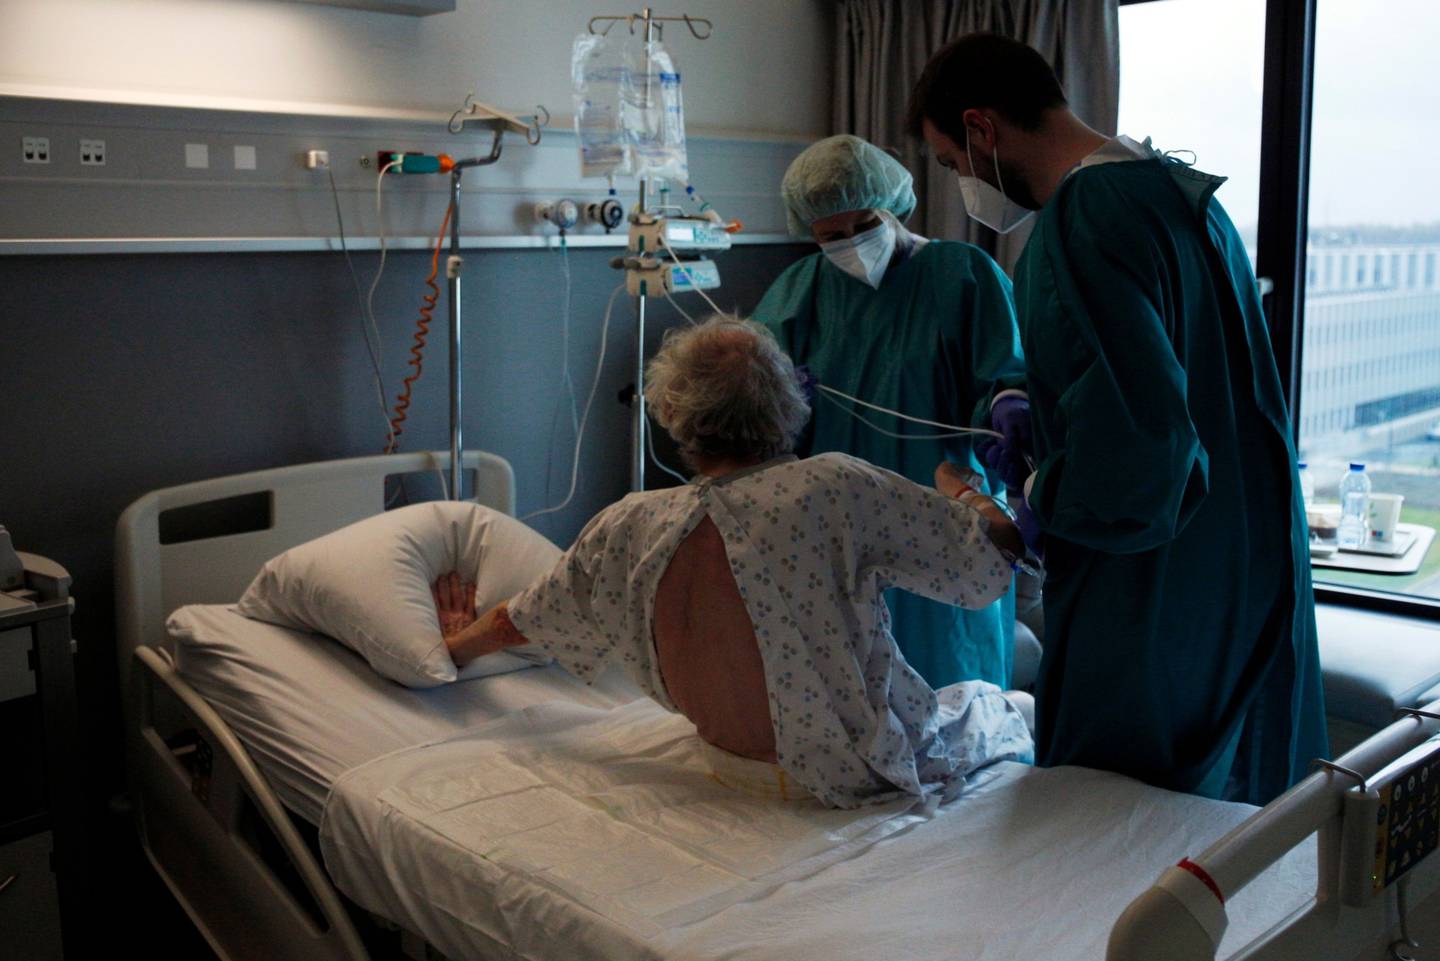 Trabajadores sanitarios asisten a un paciente en una unidad de Covid-19 en el hospital Clinique CHC Montlegia, de Lieja (Bélgica).